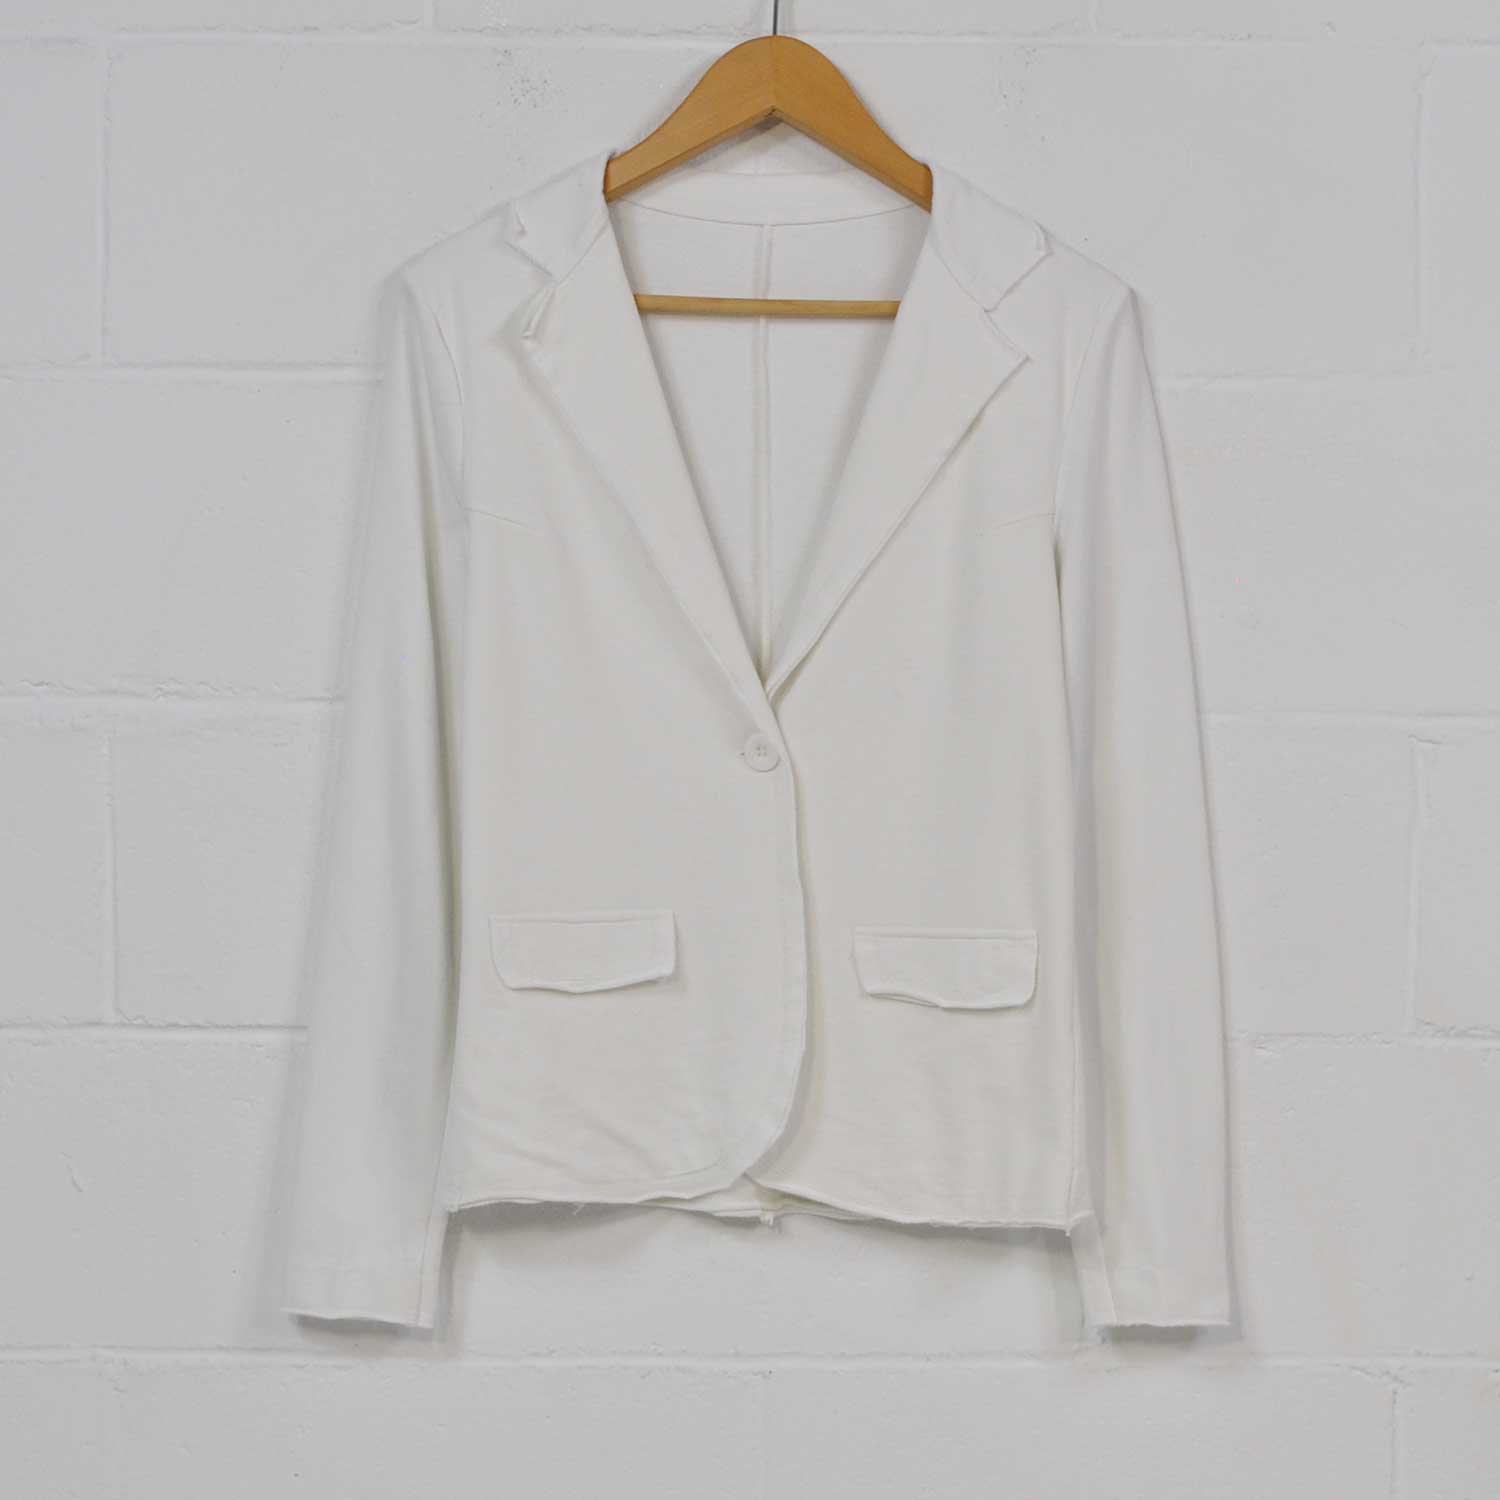 White cotton suit jacket